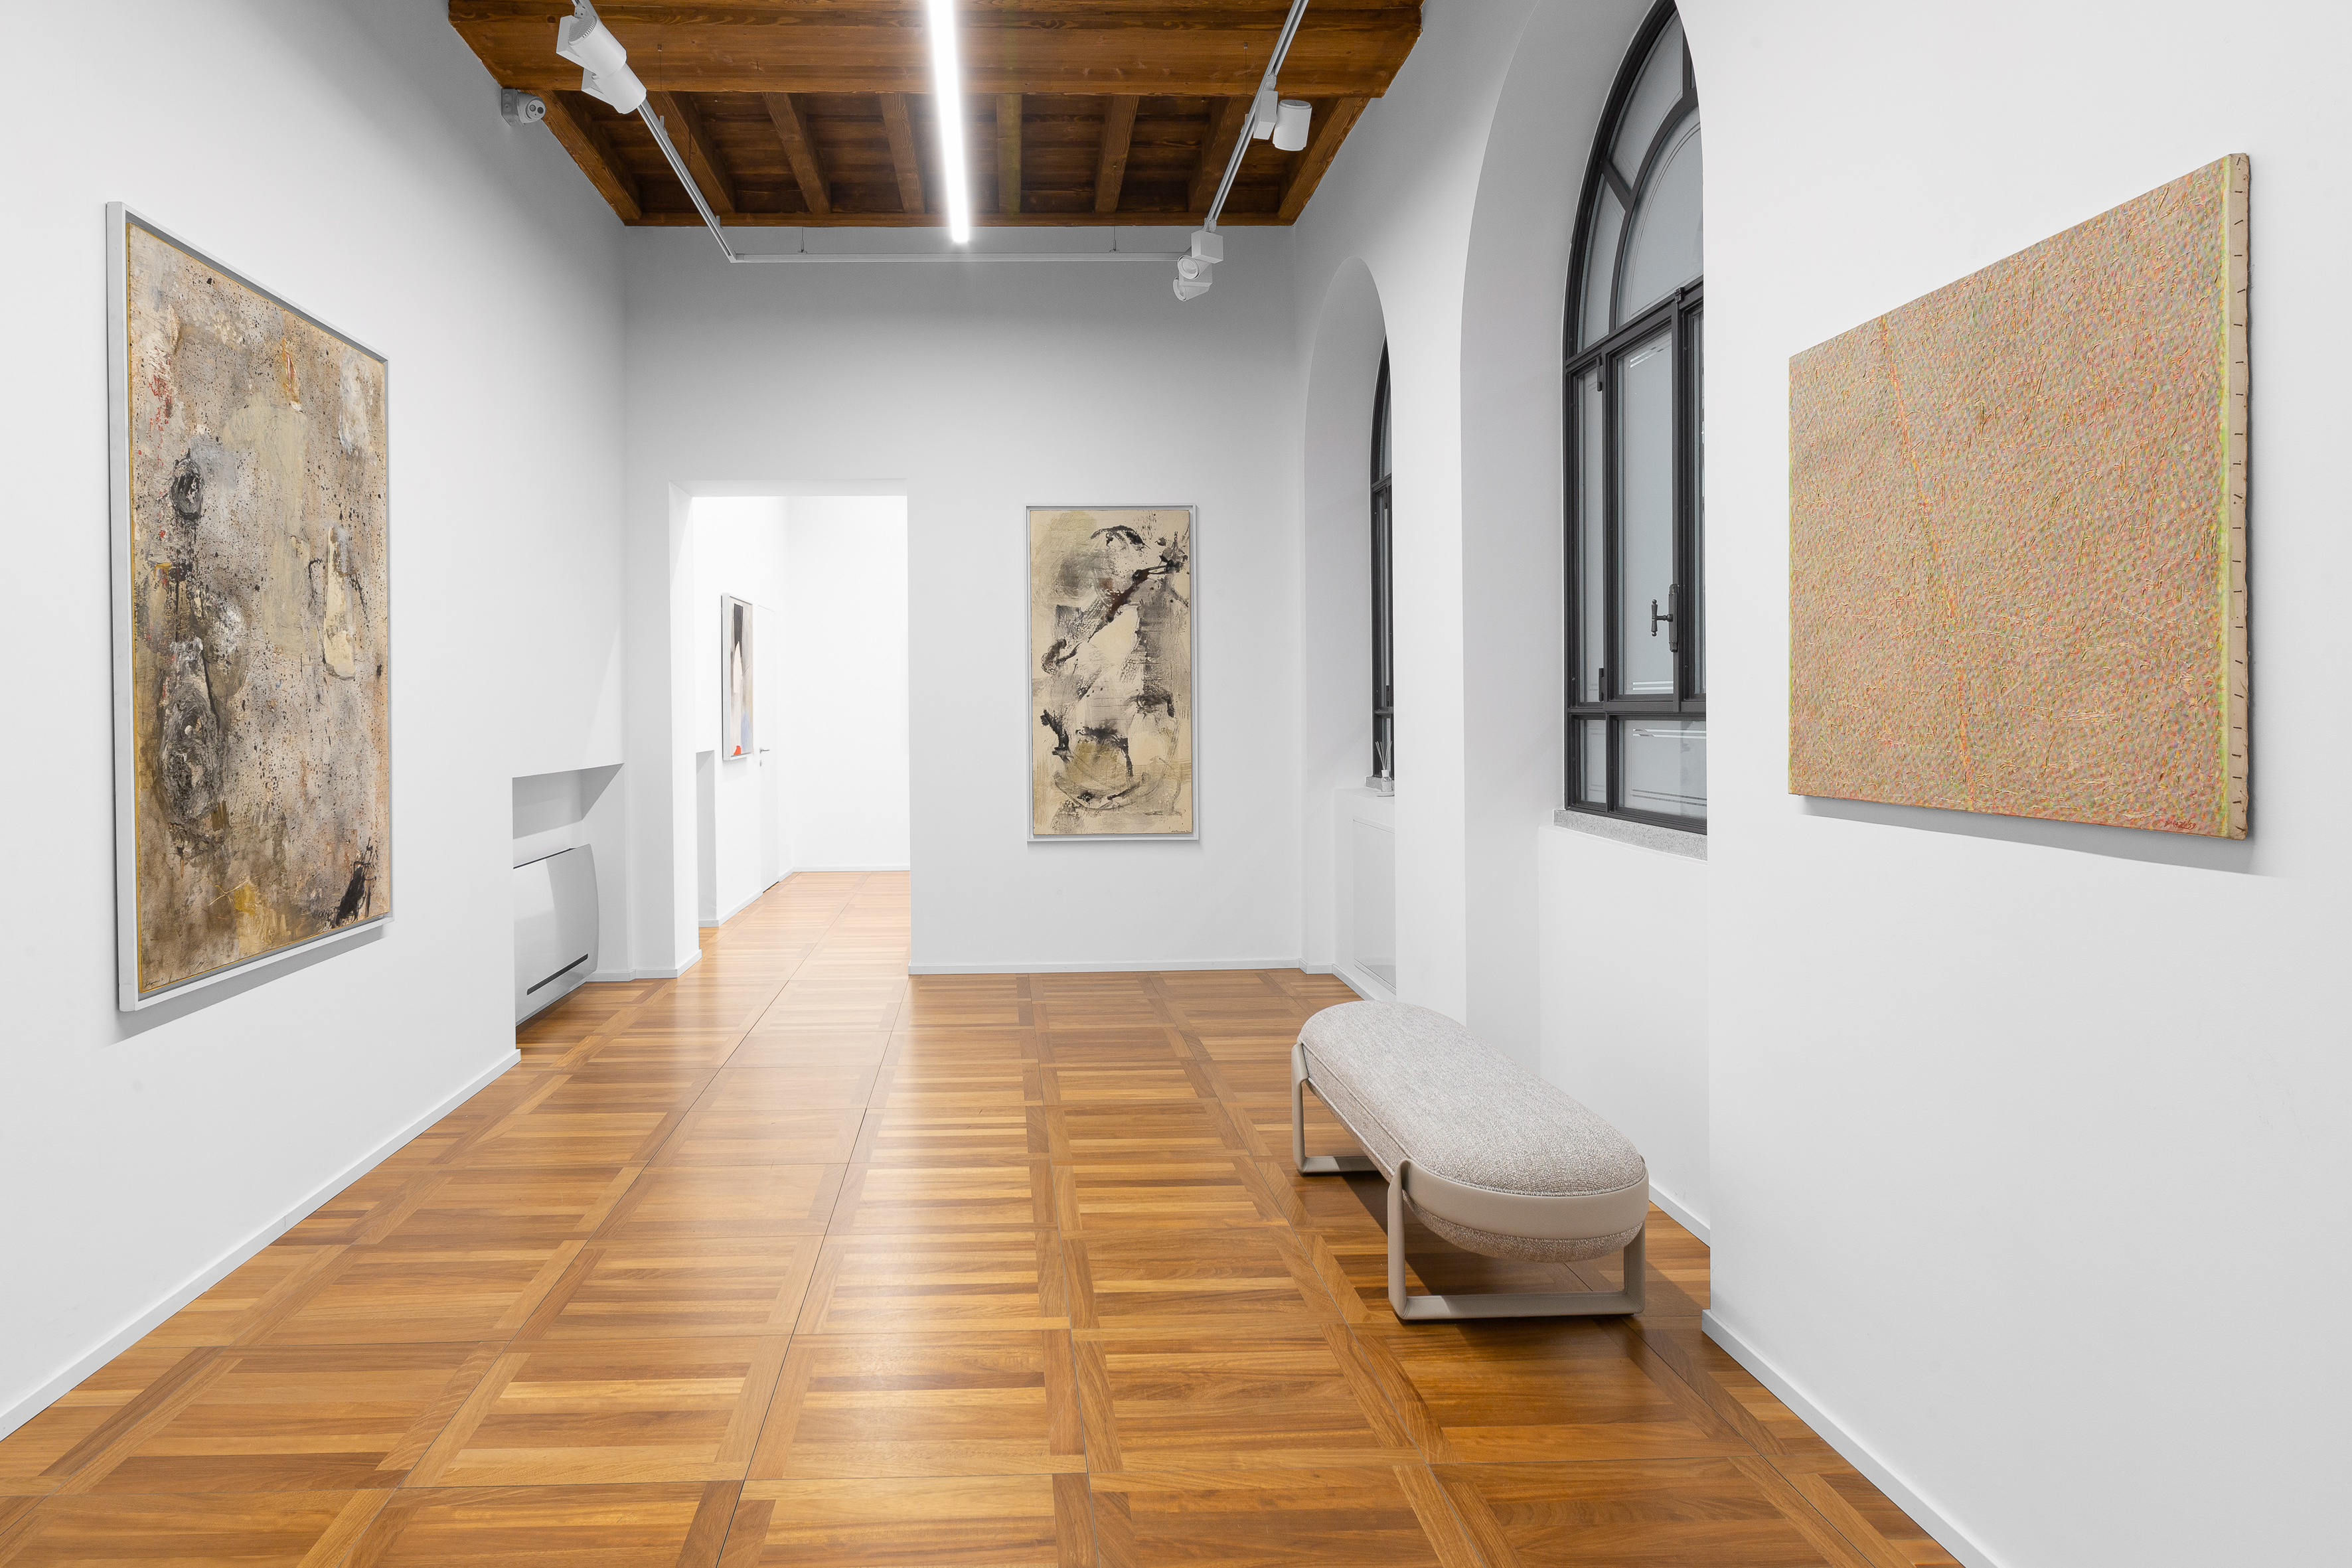 Installation view, Evocare senza Rappresentare, Cortesi Gallery Milano, 2022